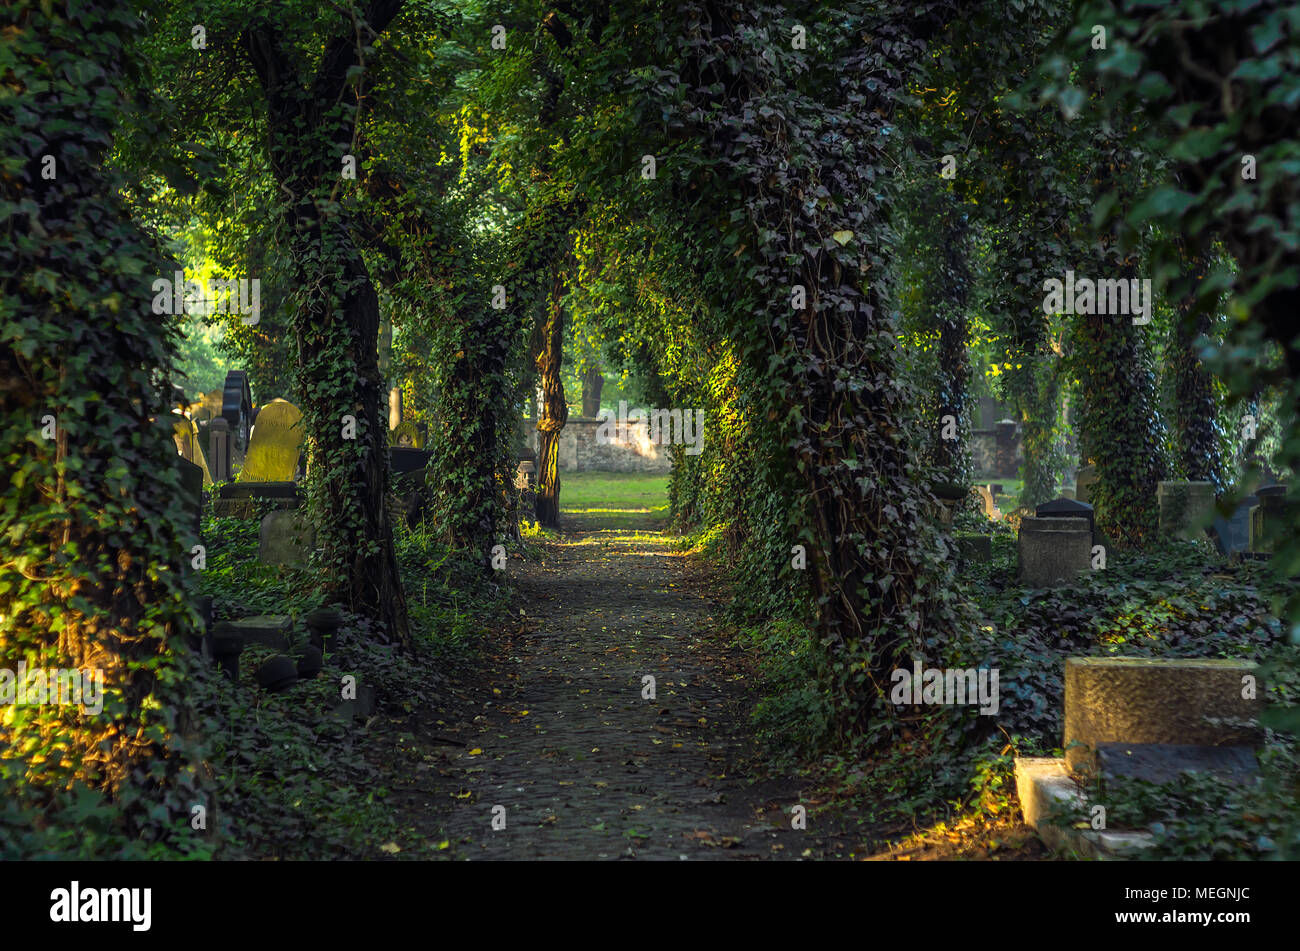 Ebnet die Gasse auf der geheimnisvollen Alten Jüdischen Friedhof mit Grabsteinen und Efeu bedeckt Bäume bei Sonnenaufgang in Zabrze, Schlesischen Hochland, Polen. Stockfoto